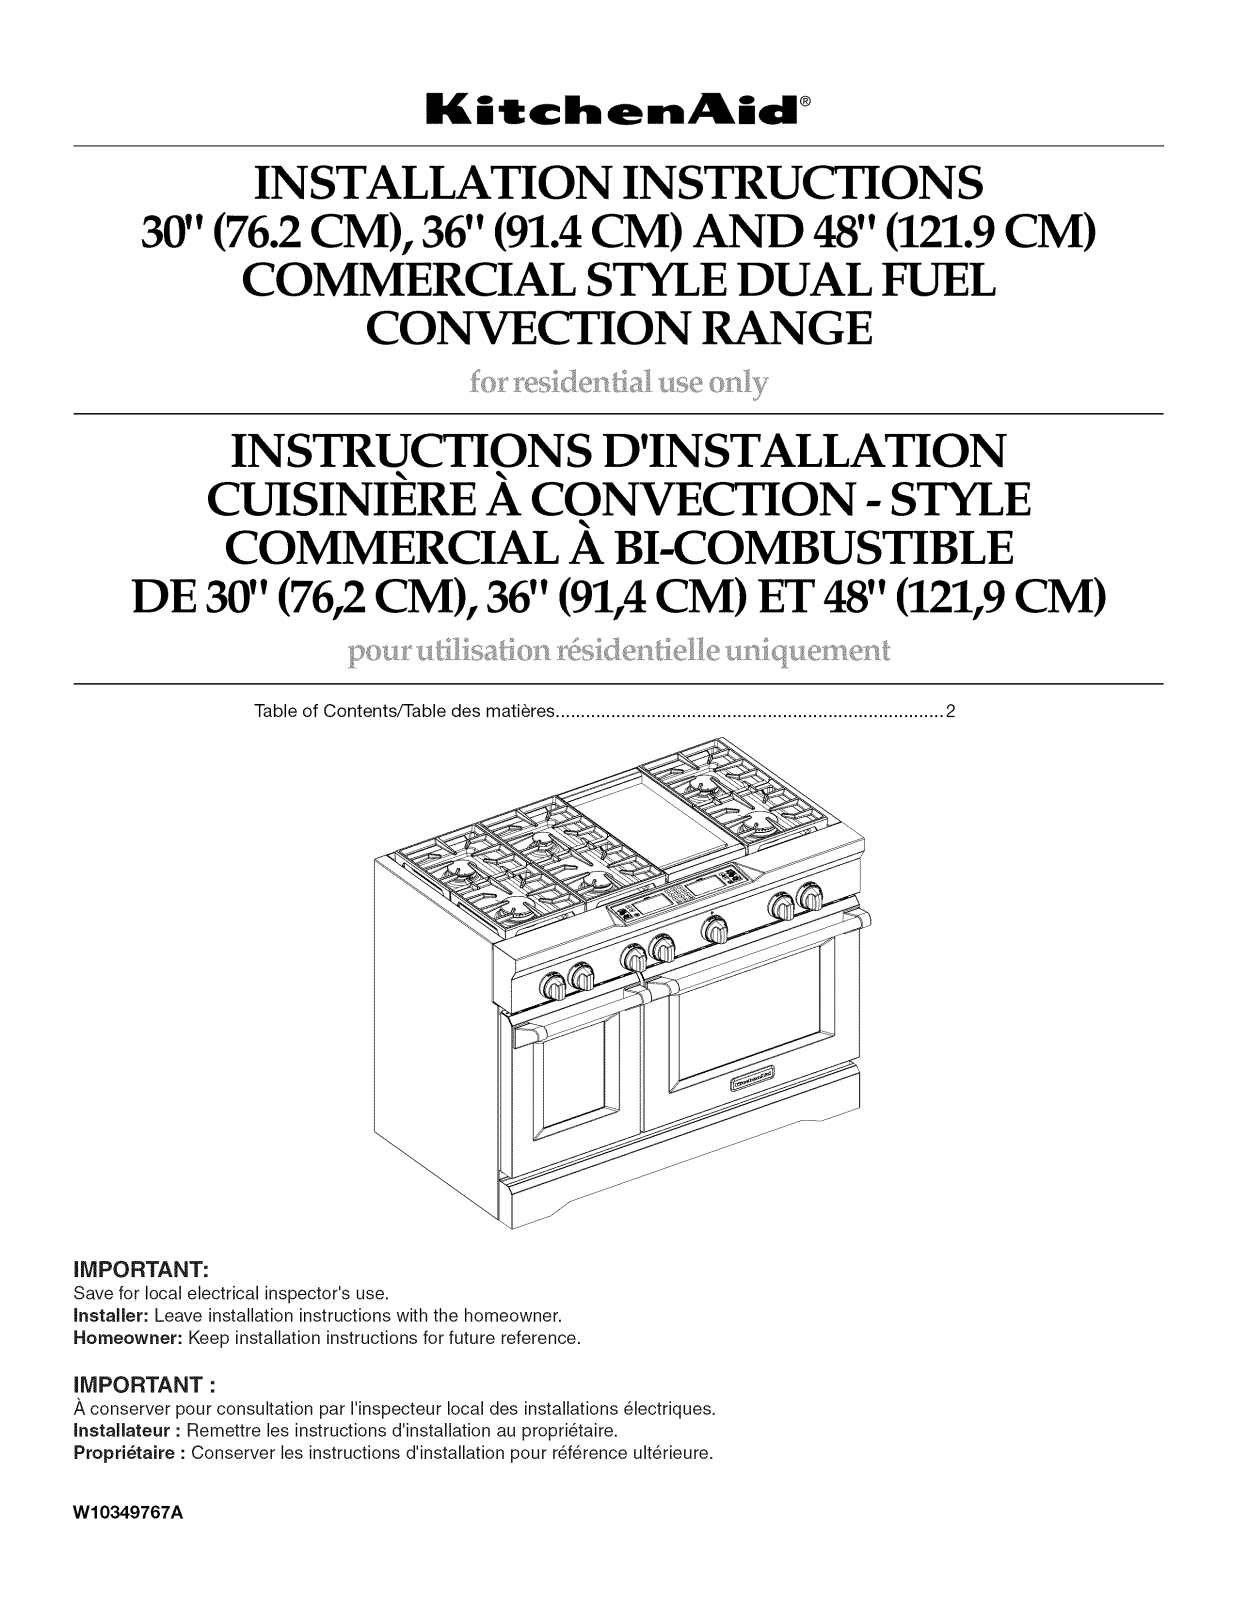 KitchenAid KDRU767VSS01, KDRS407VSS01, KDRU707VSS01, KDRS467VSS01 Installation Guide